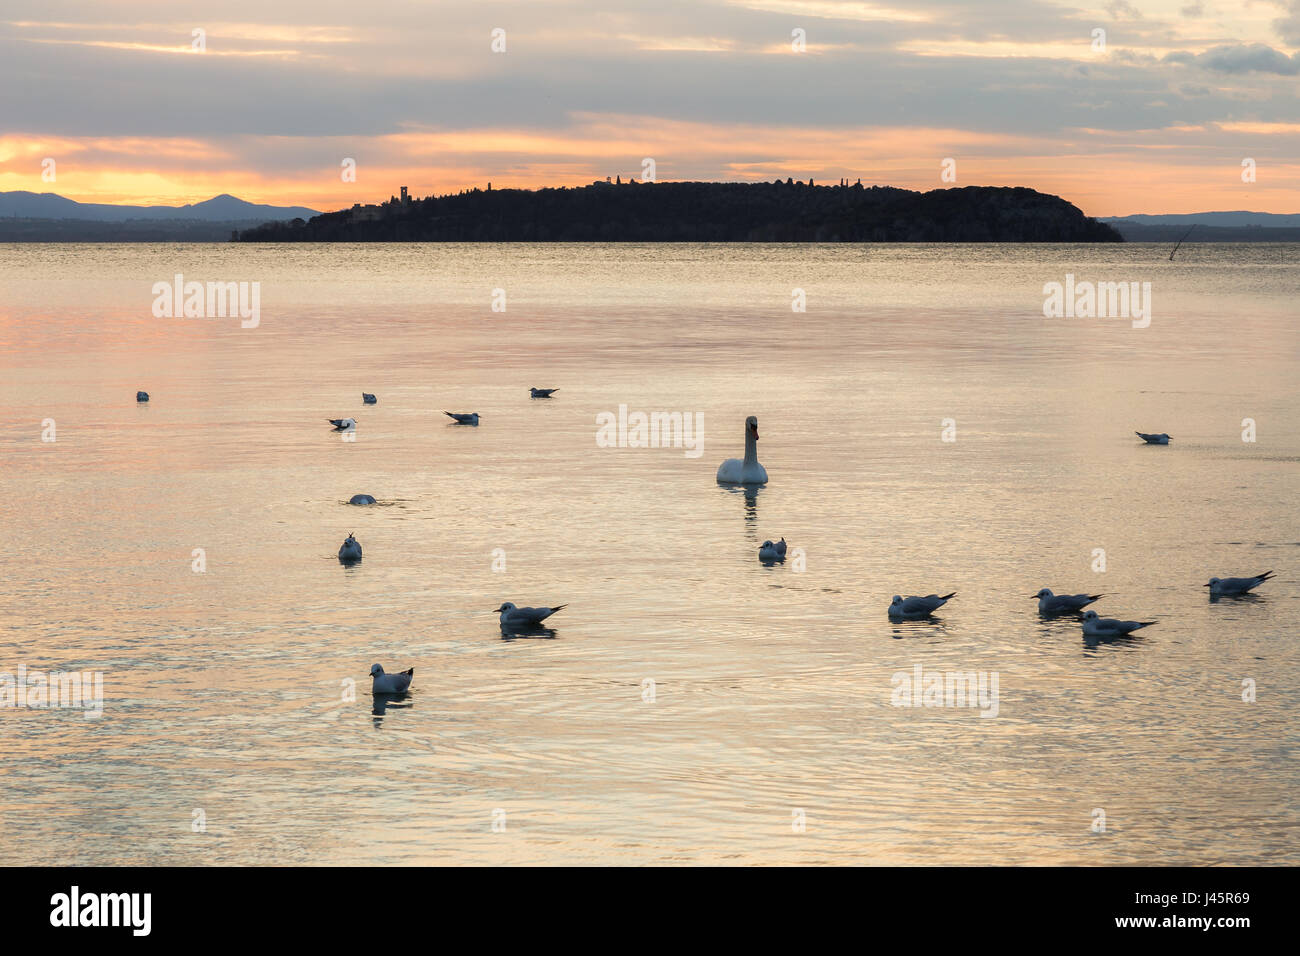 Un groupe de cygnes sur un lac au coucher du soleil, avec une faible lumière et couleurs chaudes Banque D'Images